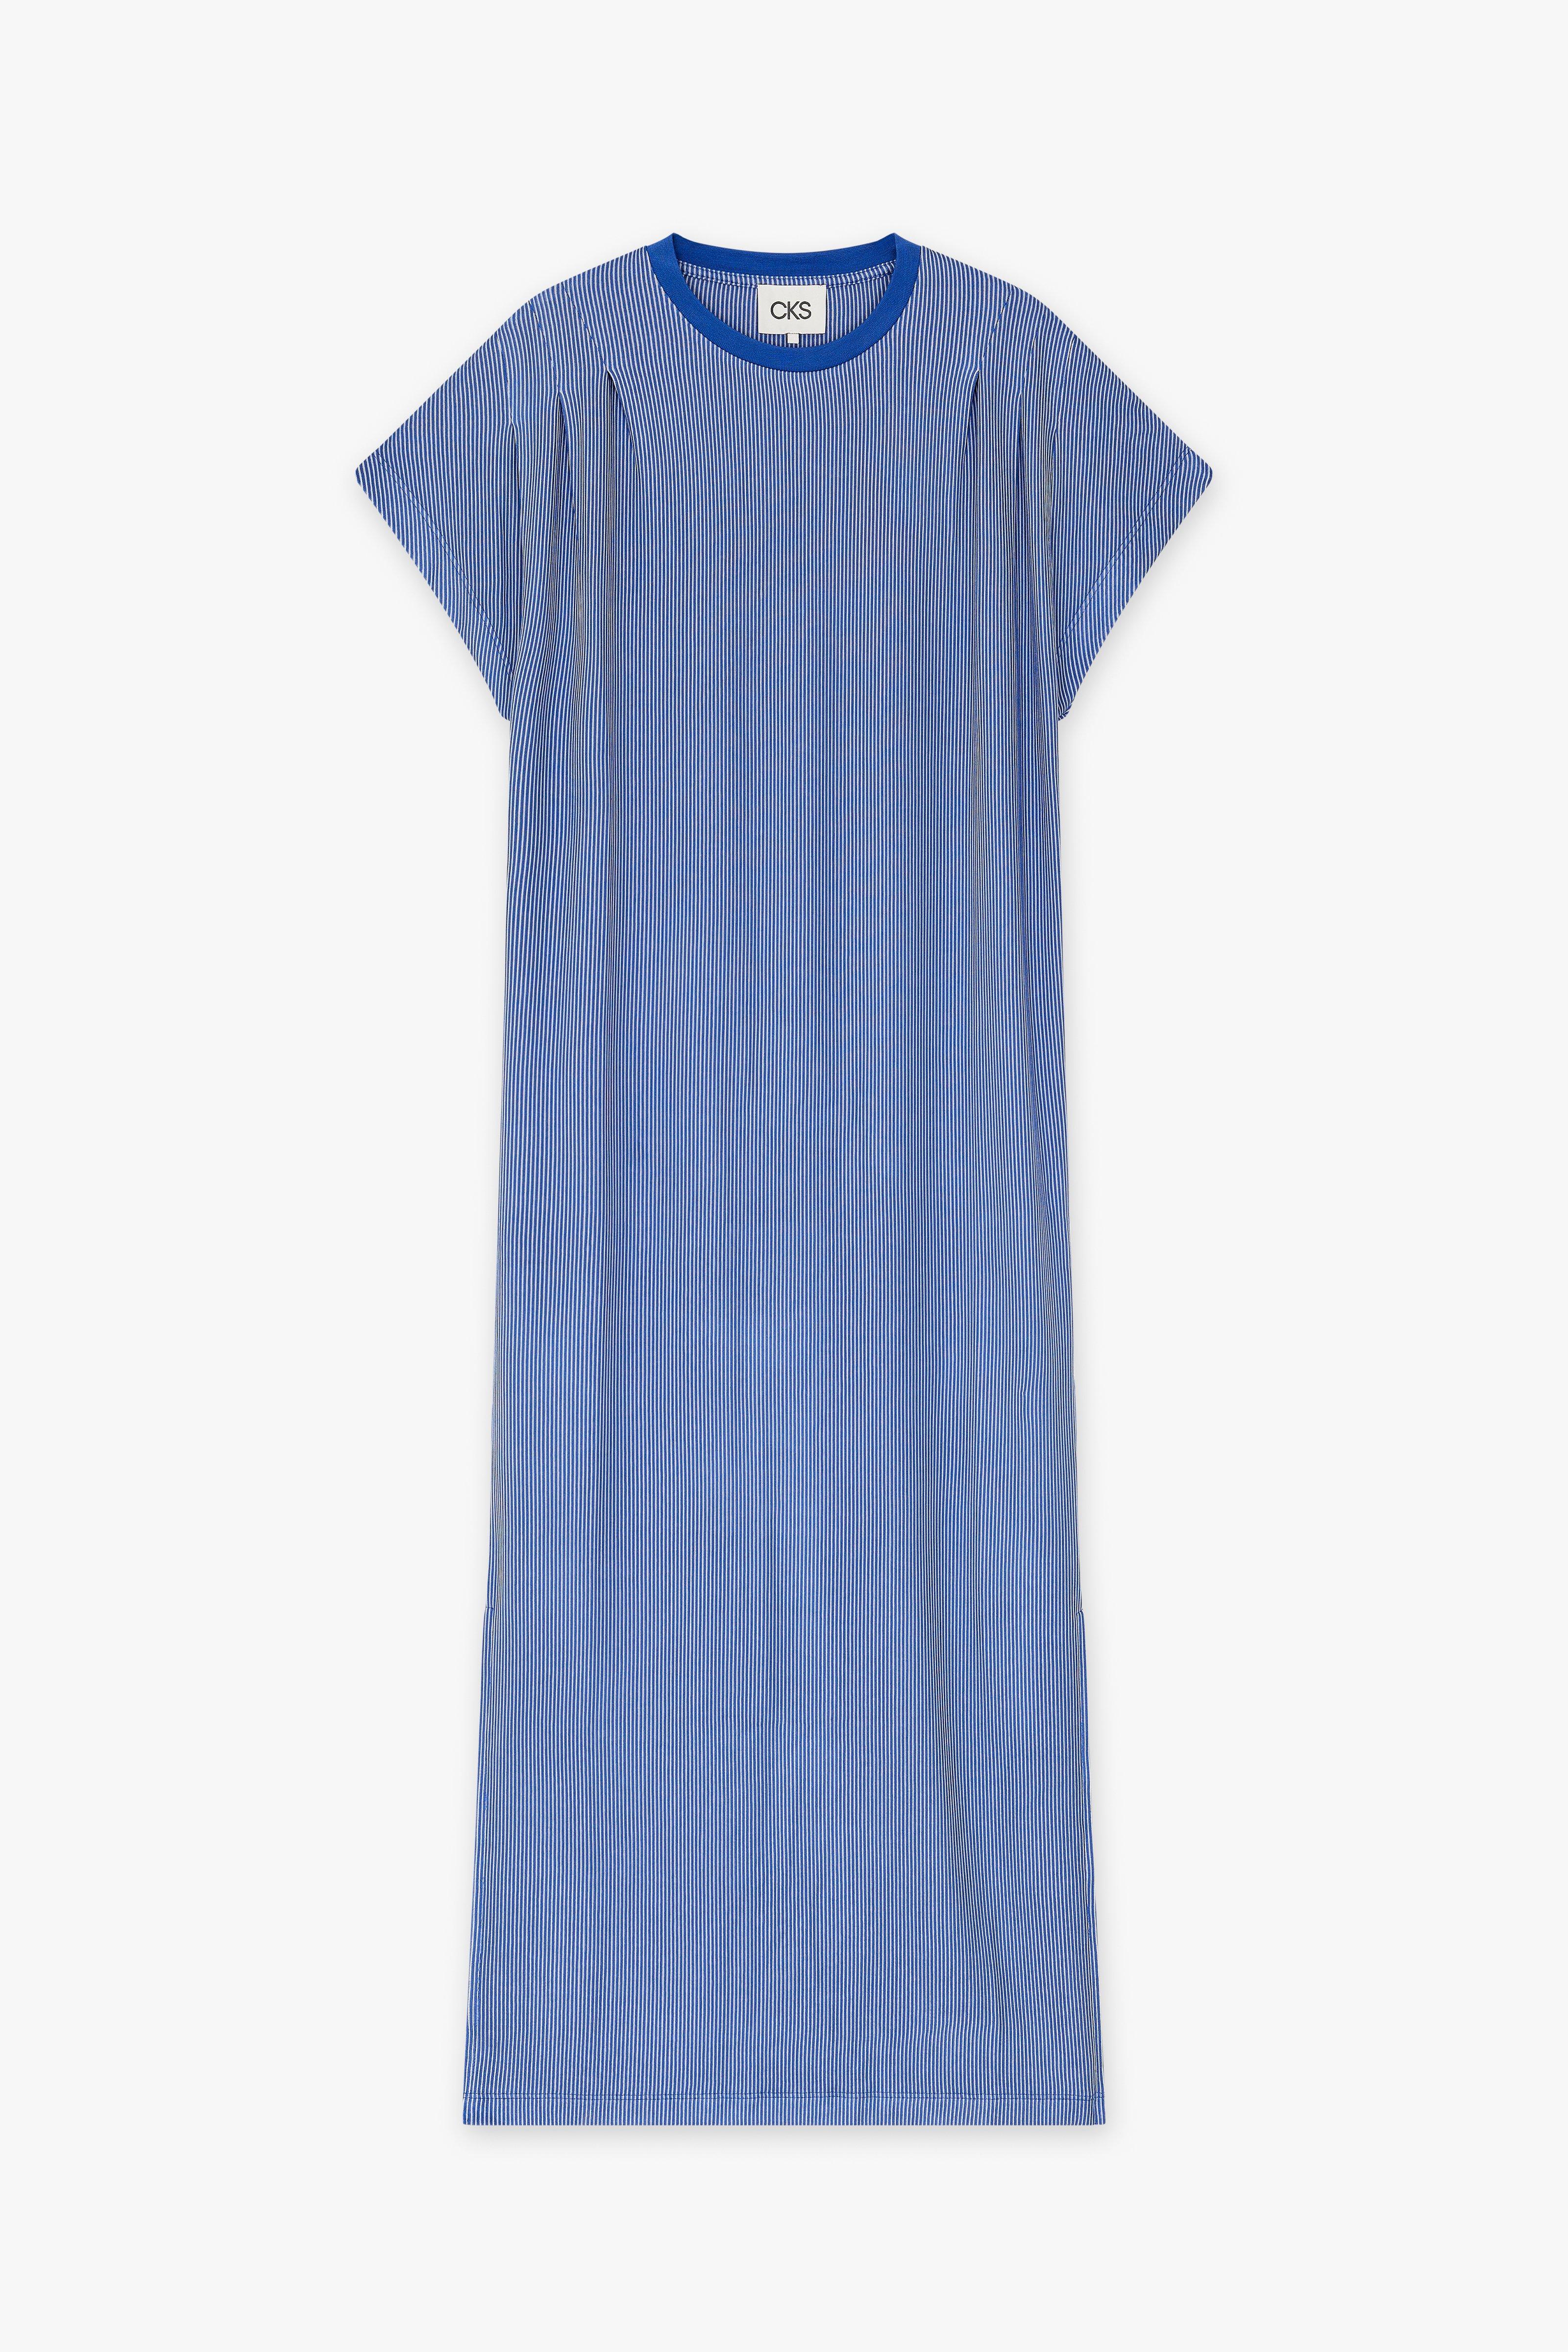 CKS Dames - JAZZYLONG - lange jurk - donkerblauw